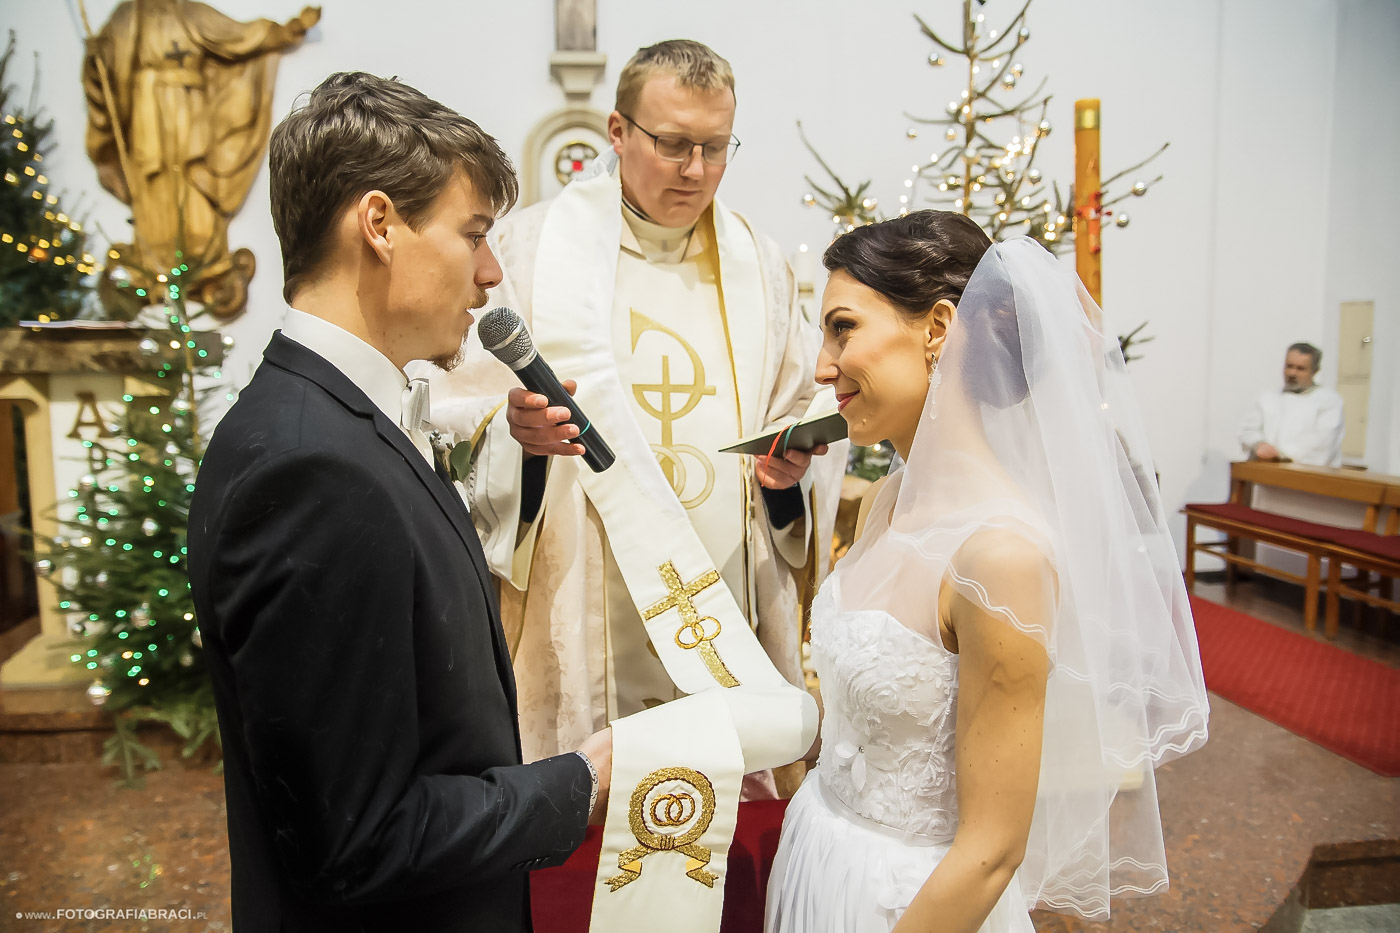 ślub w Boże Narodzenie, święta jako motyw przewodni wesela, wesele zimą, wedding planner Dolny Śląsk, ślub kościelny zimą